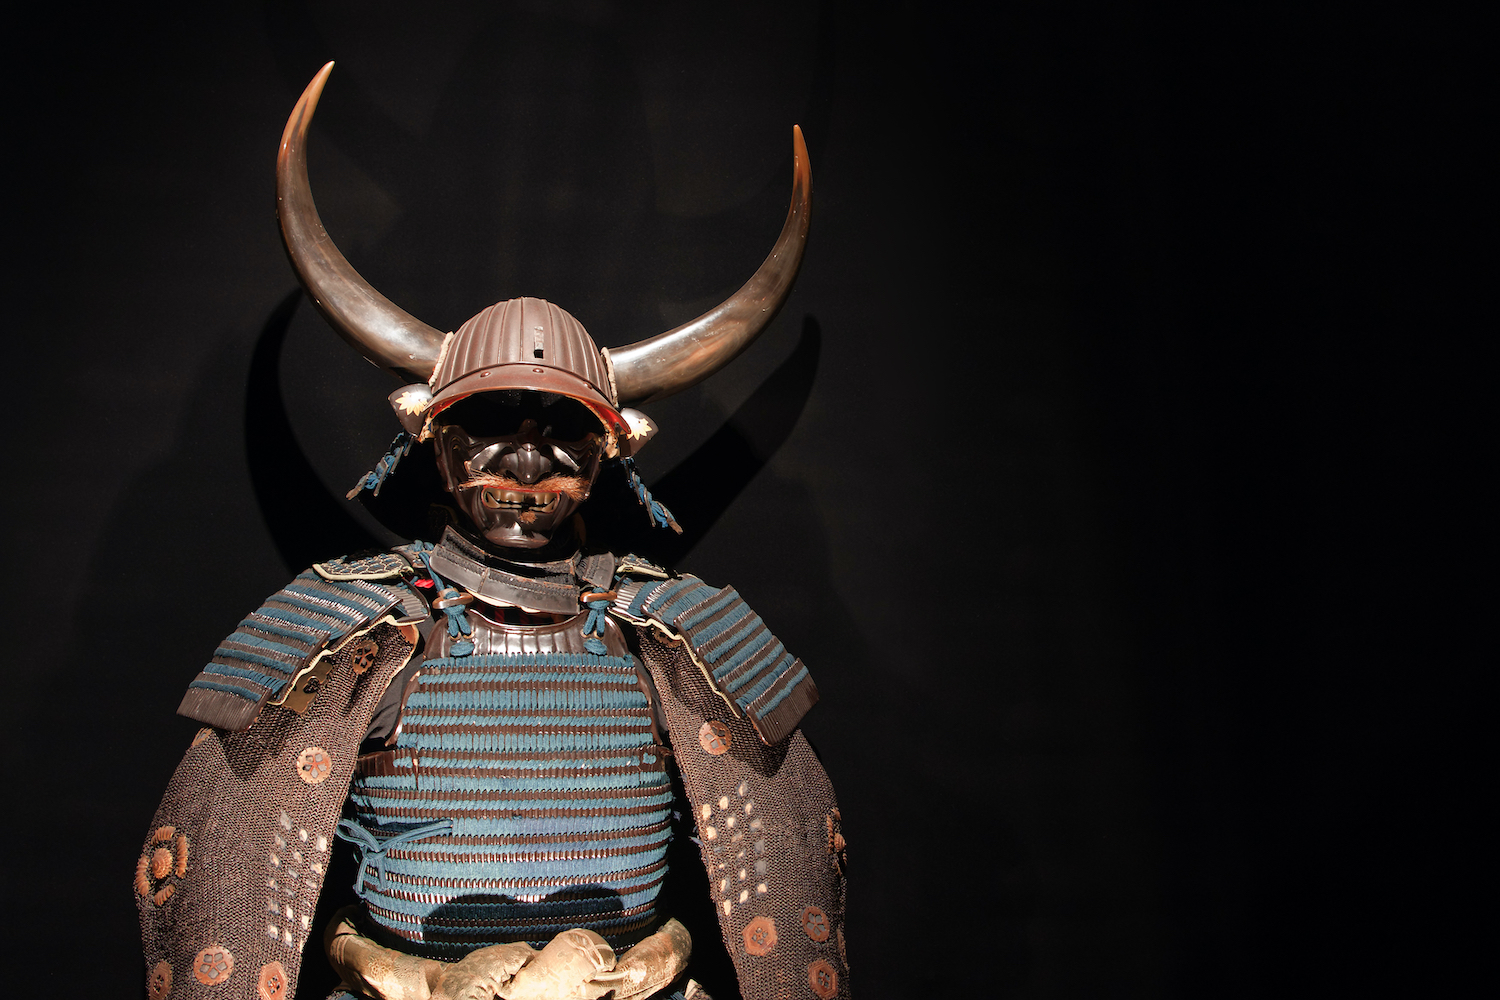 Historic samurai armor with horn helmet